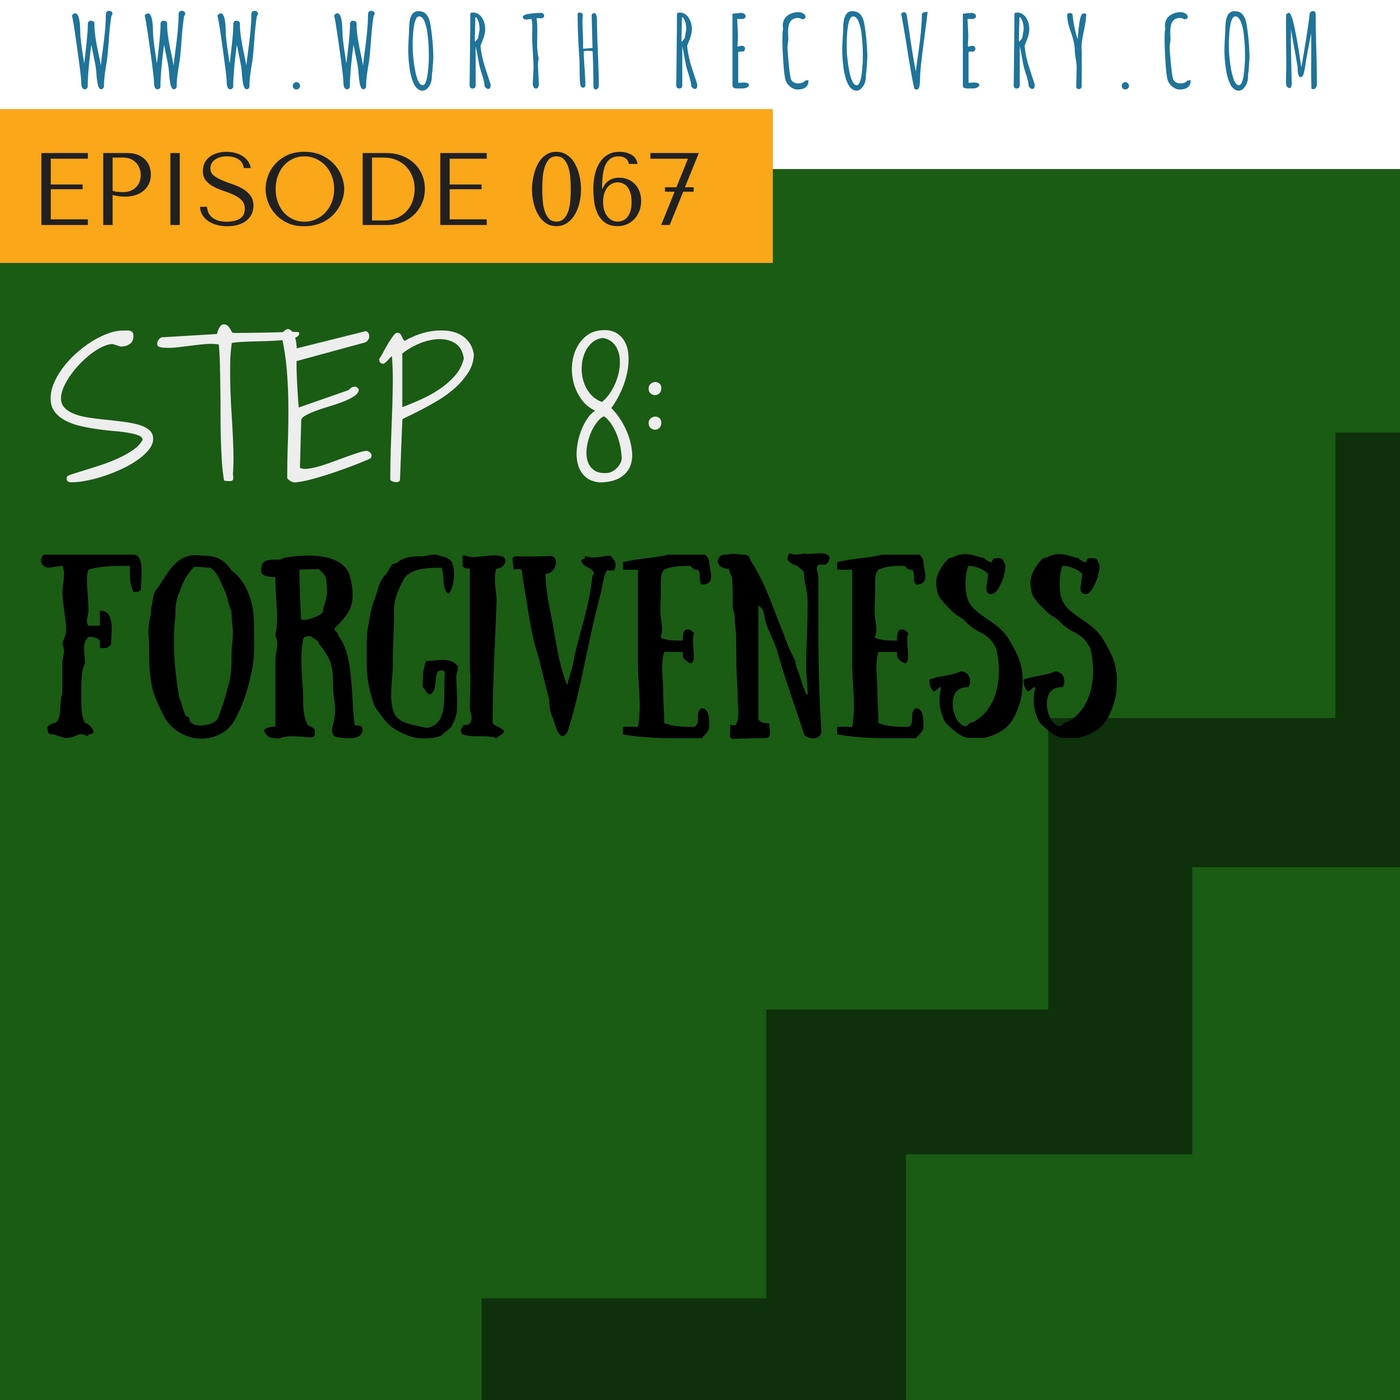 Episode 067: Step 8: Forgiveness